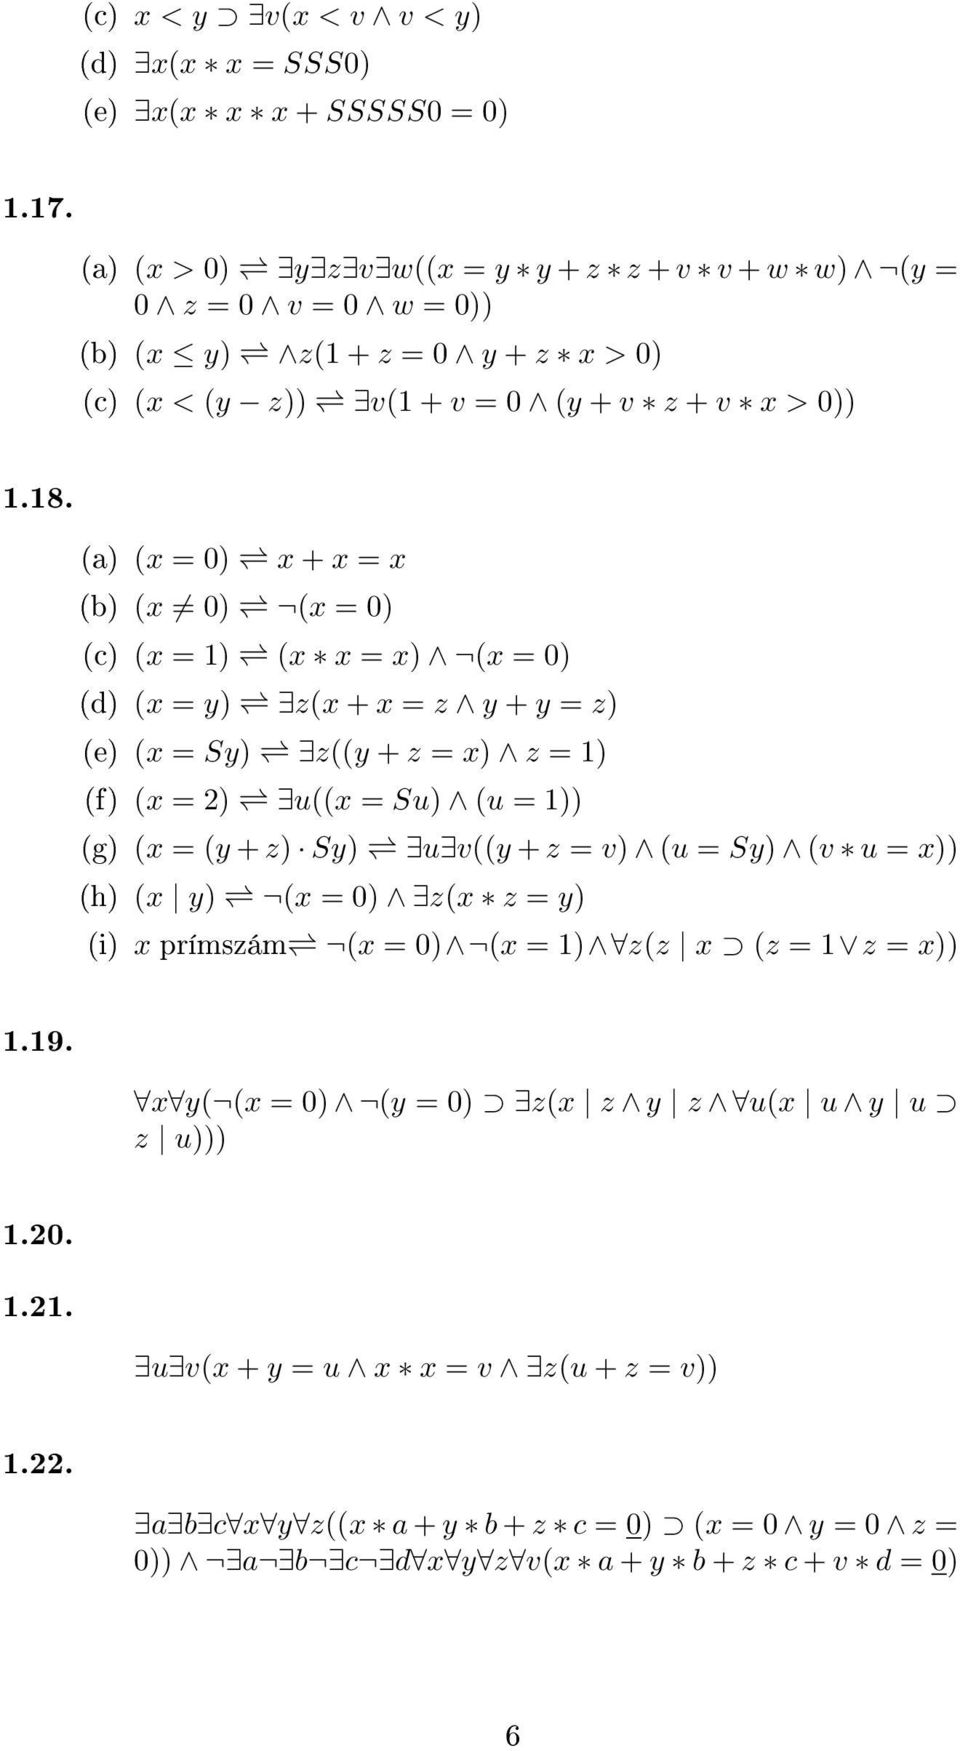 (a) (x = 0) x + x = x (b) (x 0) (x = 0) (c) (x = 1) (x x = x) (x = 0) (d) (x = y) z(x + x = z y + y = z) (e) (x = Sy) z((y + z = x) z = 1) (f) (x = 2) u((x = Su) (u = 1)) (g) (x = (y + z)